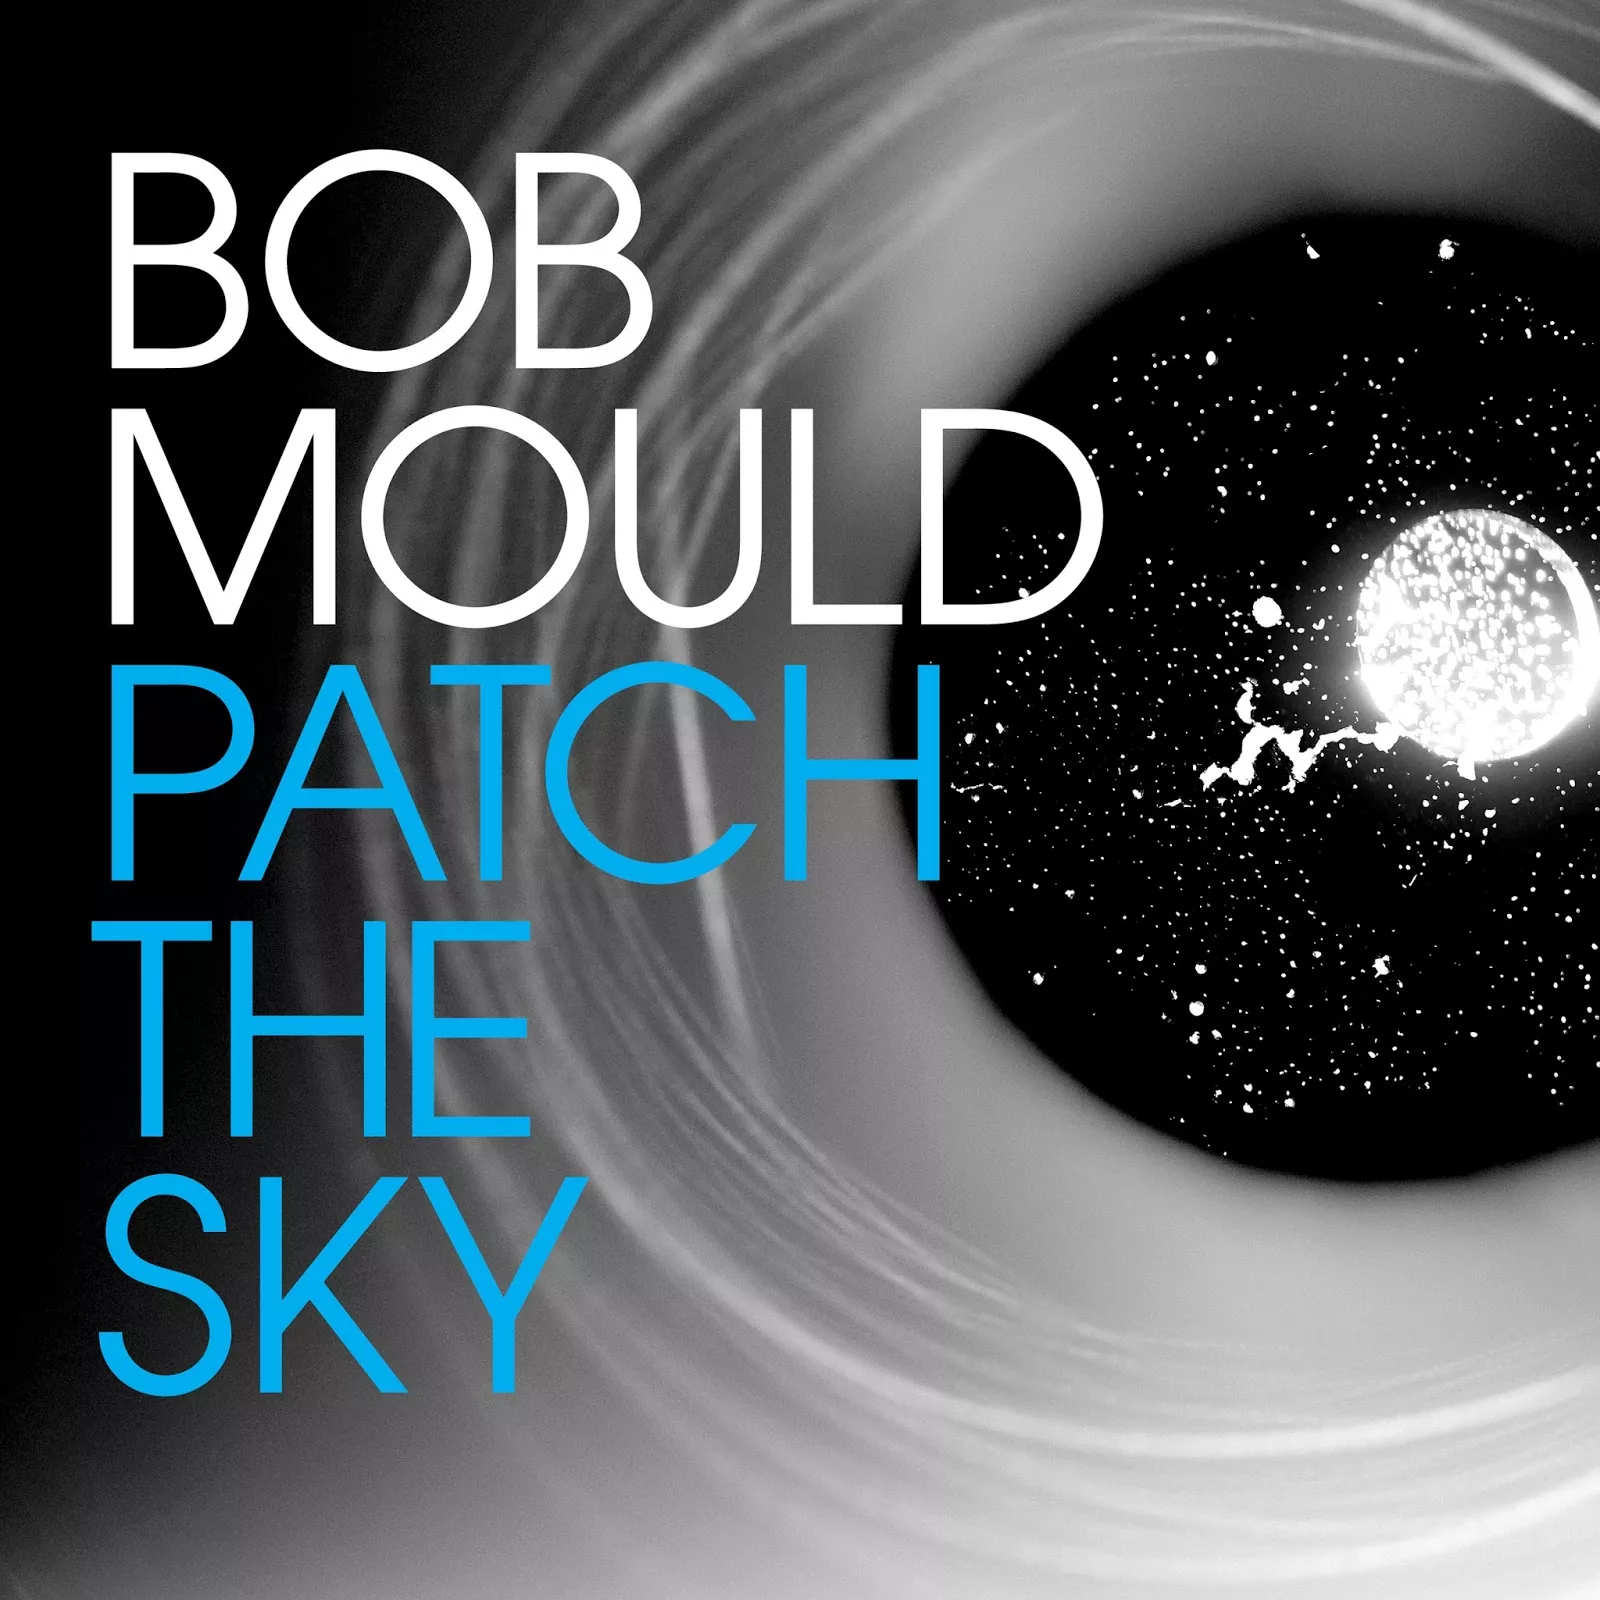 Patch The Sky - Bob Mould